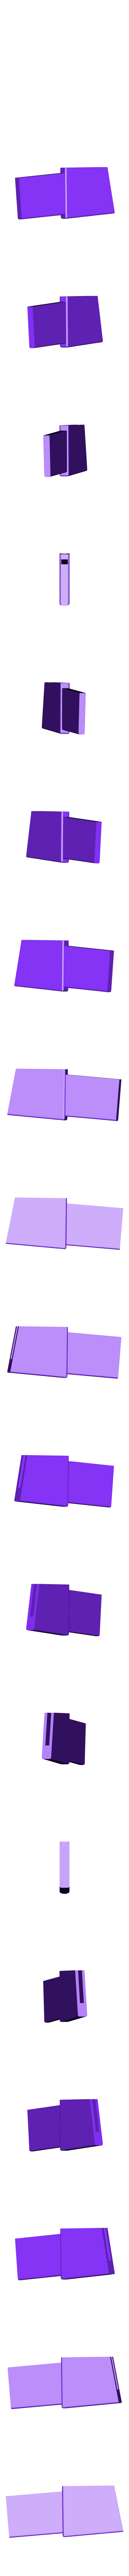 Right_Wing_Purple.stl Télécharger fichier STL gratuit Buzz L'Éclair - Impression multicolore • Modèle à imprimer en 3D, ChaosCoreTech